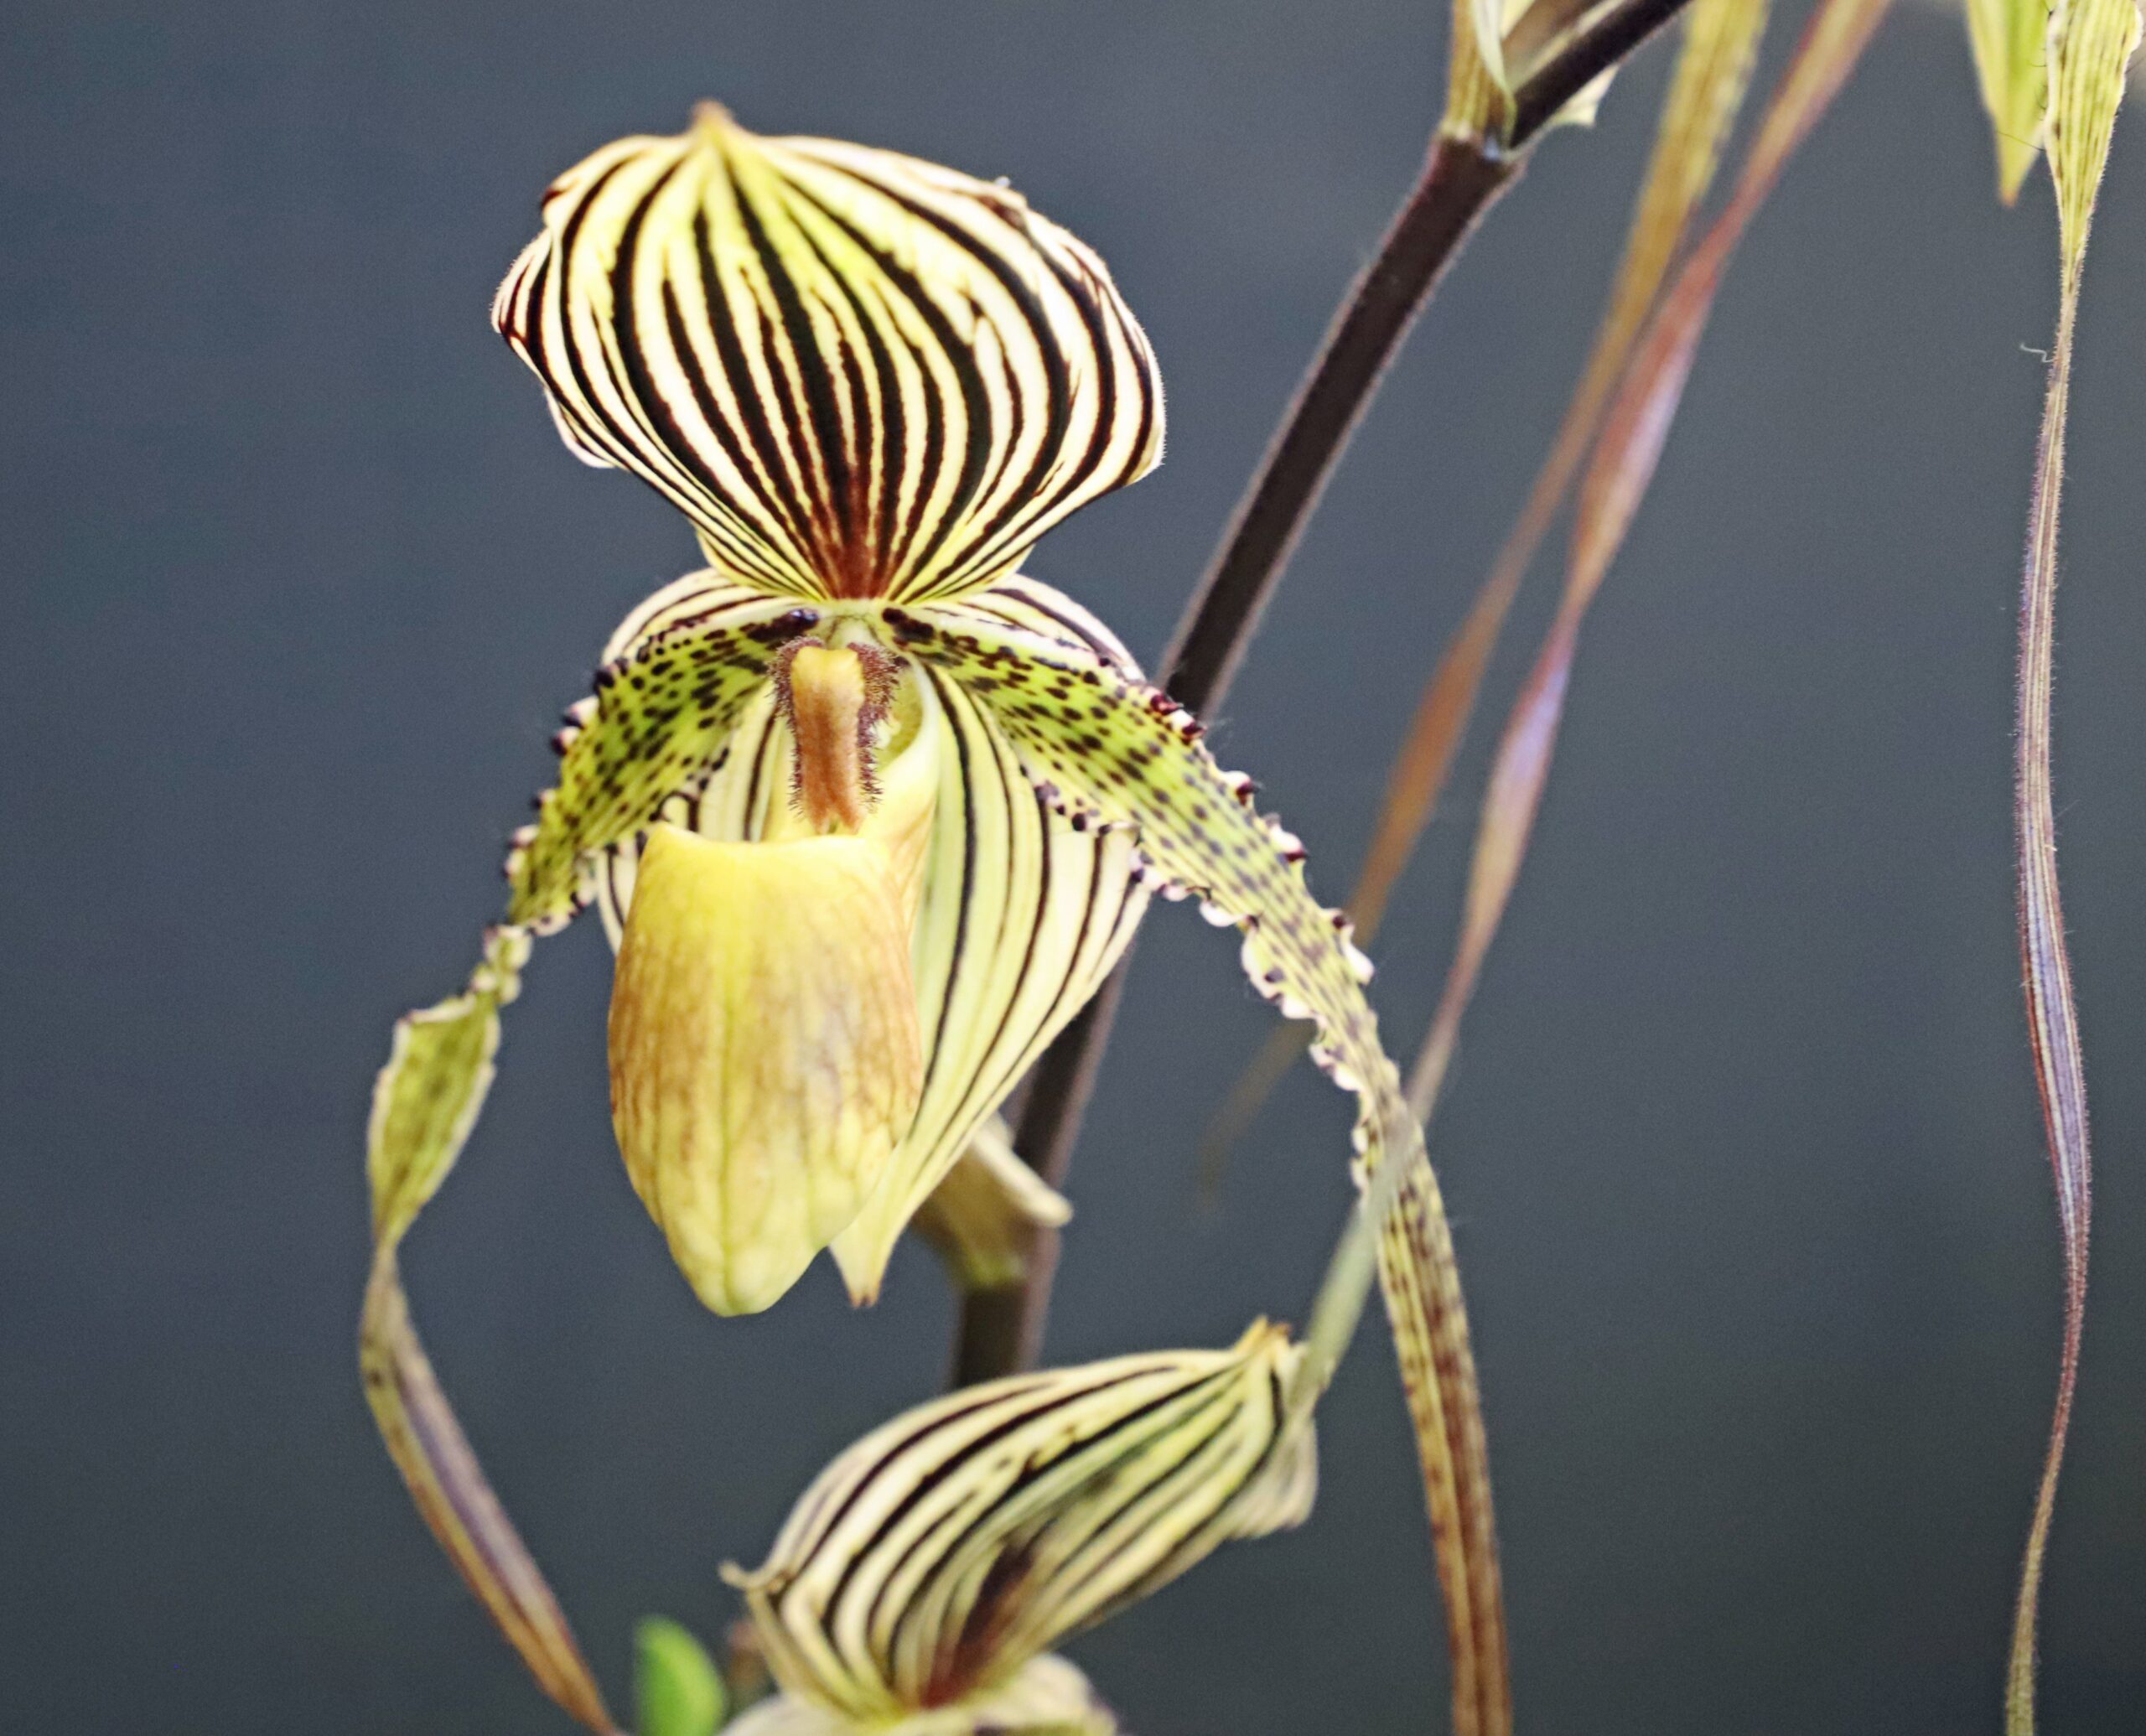 Ward’s Paphiopedilum Orchid